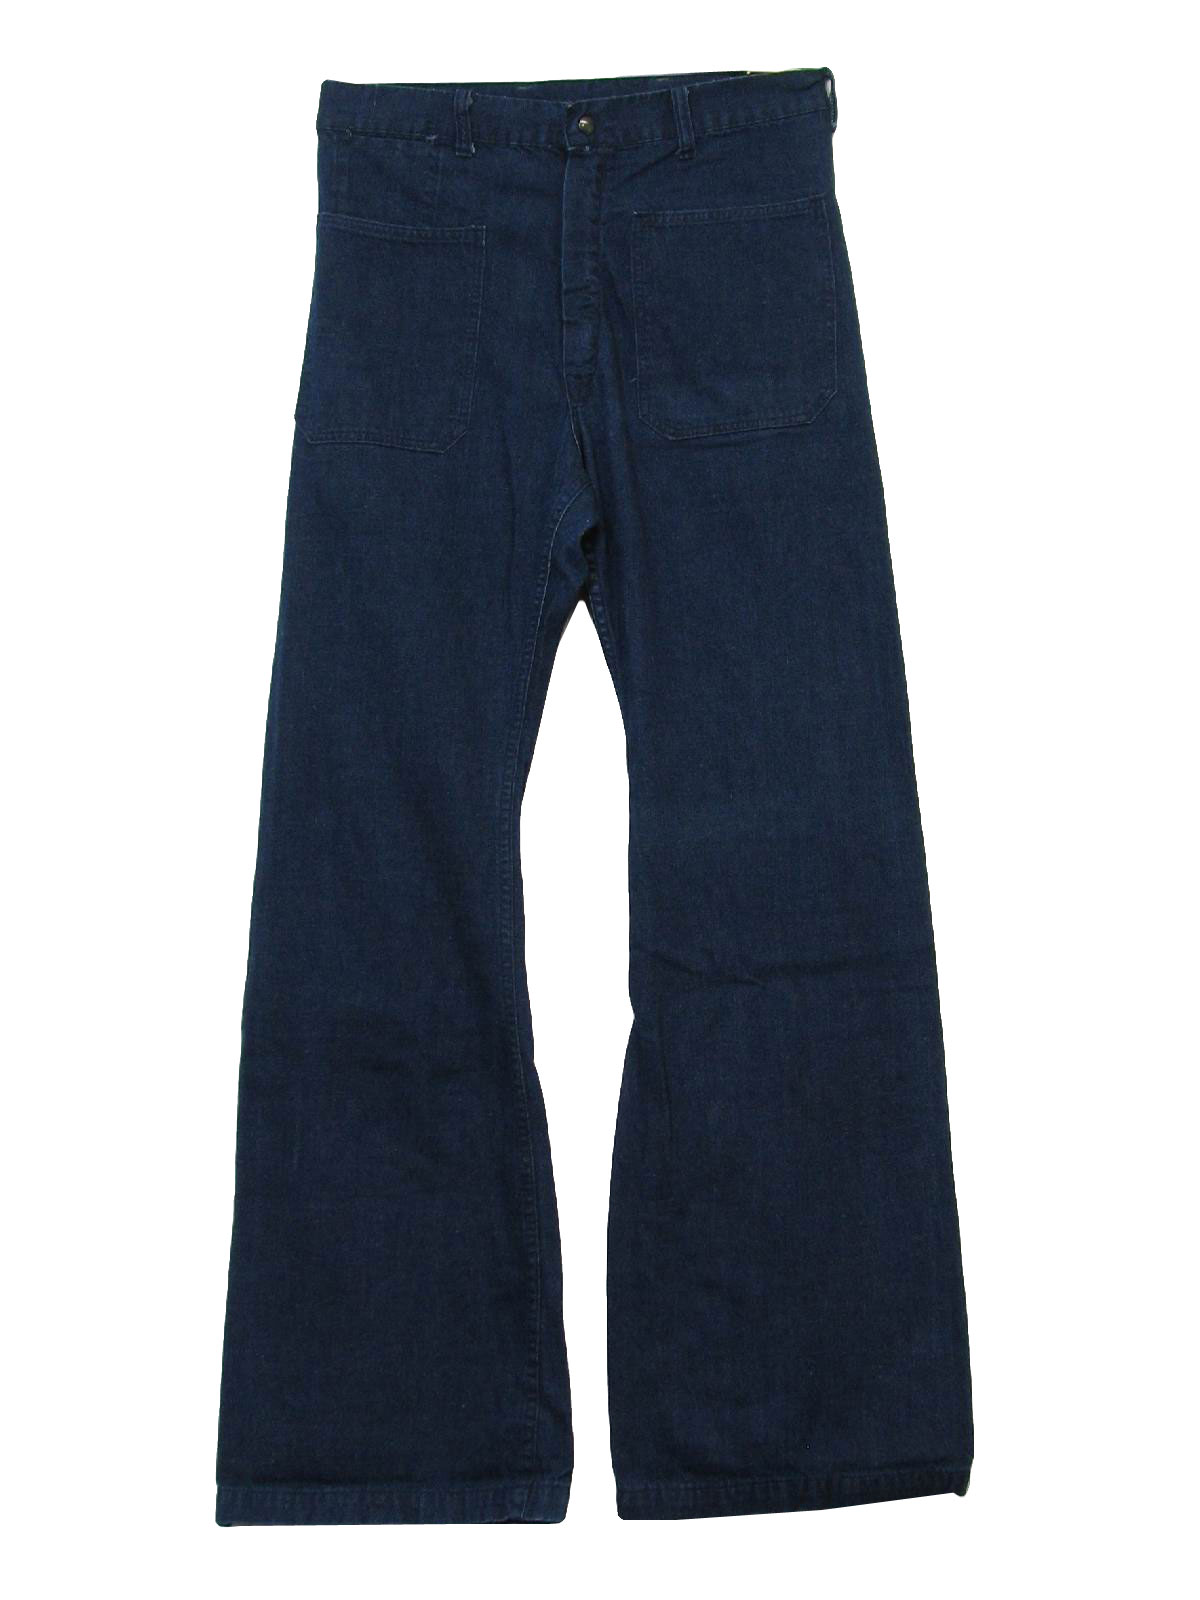 1970s Vintage Bellbottom Pants: 70s -Missing Label- Mens dark blue ...